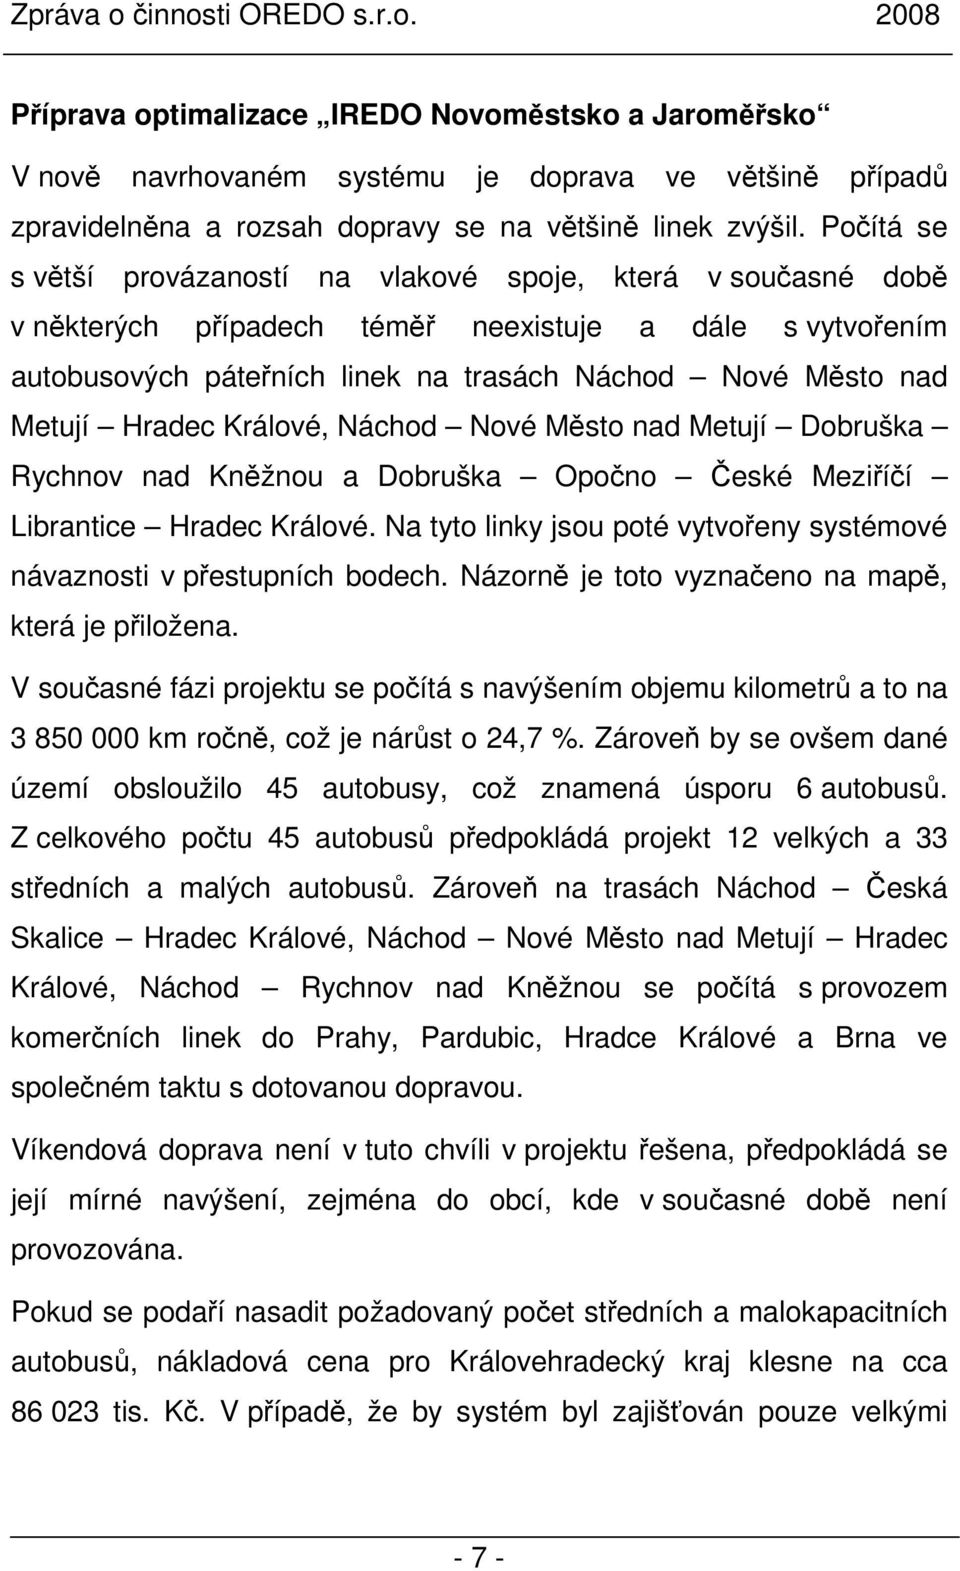 Hradec Králové, Náchod Nové Město nad Metují Dobruška Rychnov nad Kněžnou a Dobruška Opočno České Meziříčí Librantice Hradec Králové.